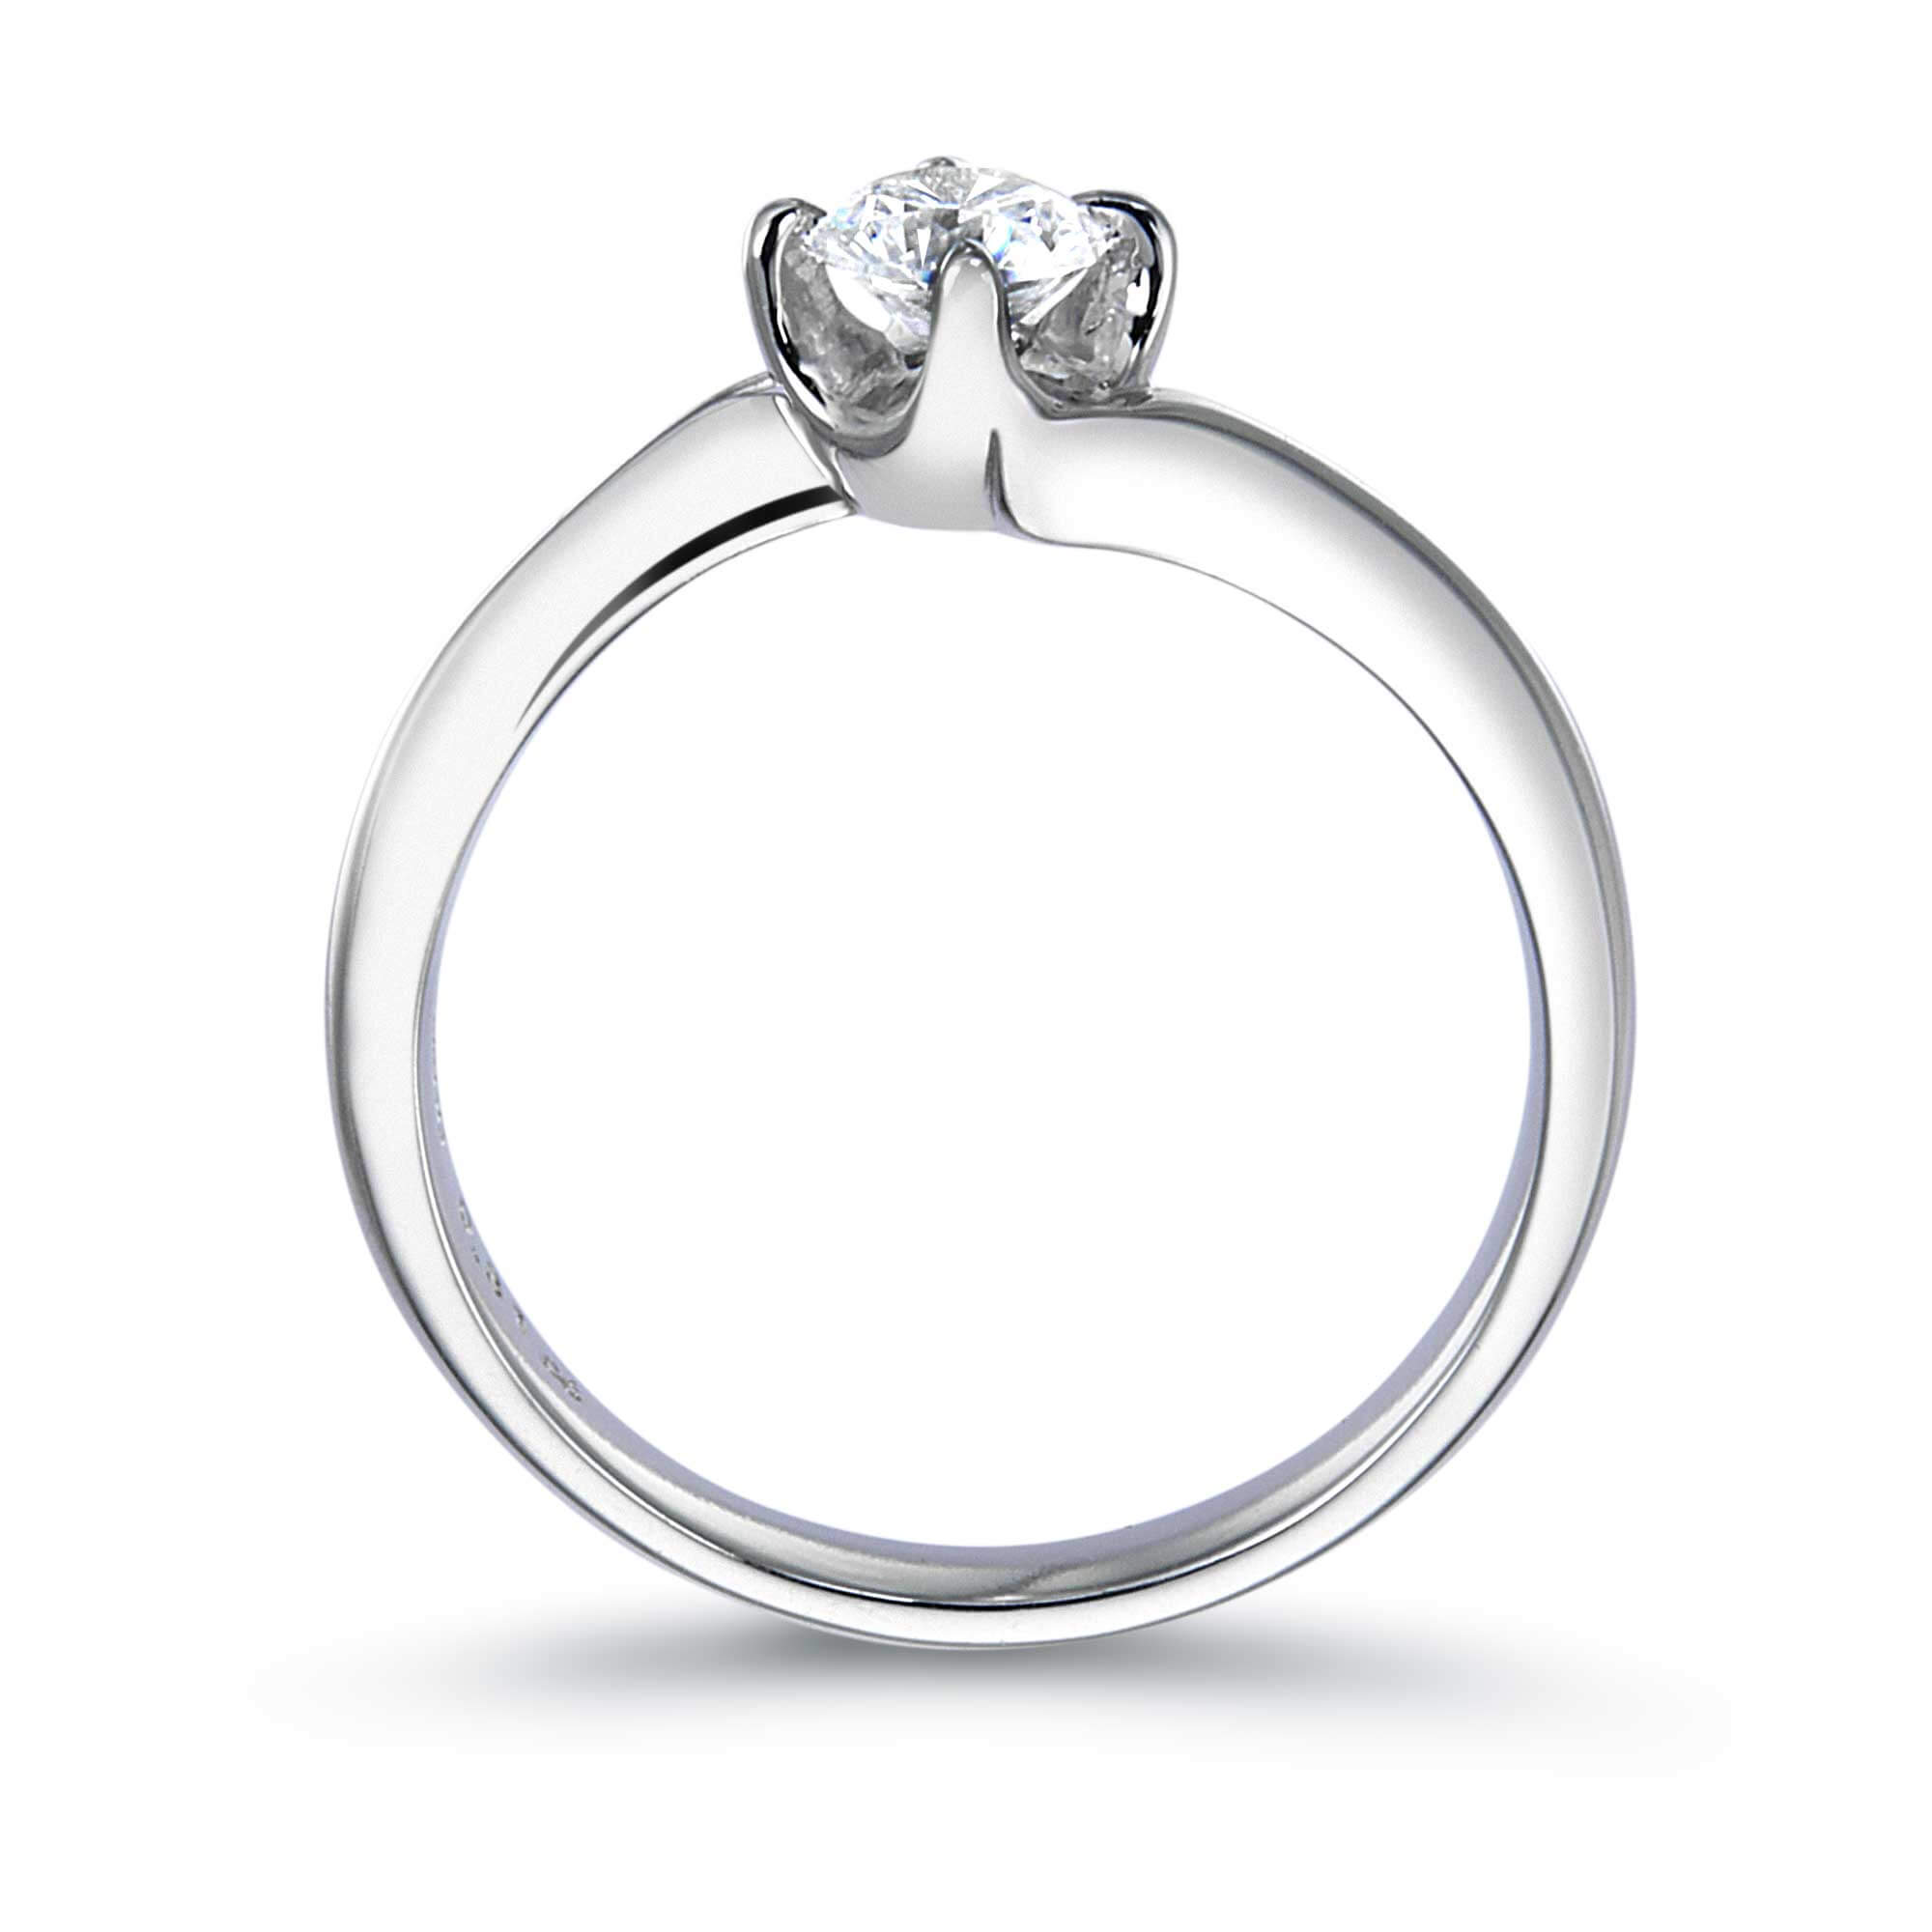 4本爪ウェーブラインラウンドダイヤモンドリング 結婚指輪 婚約指輪のqdm